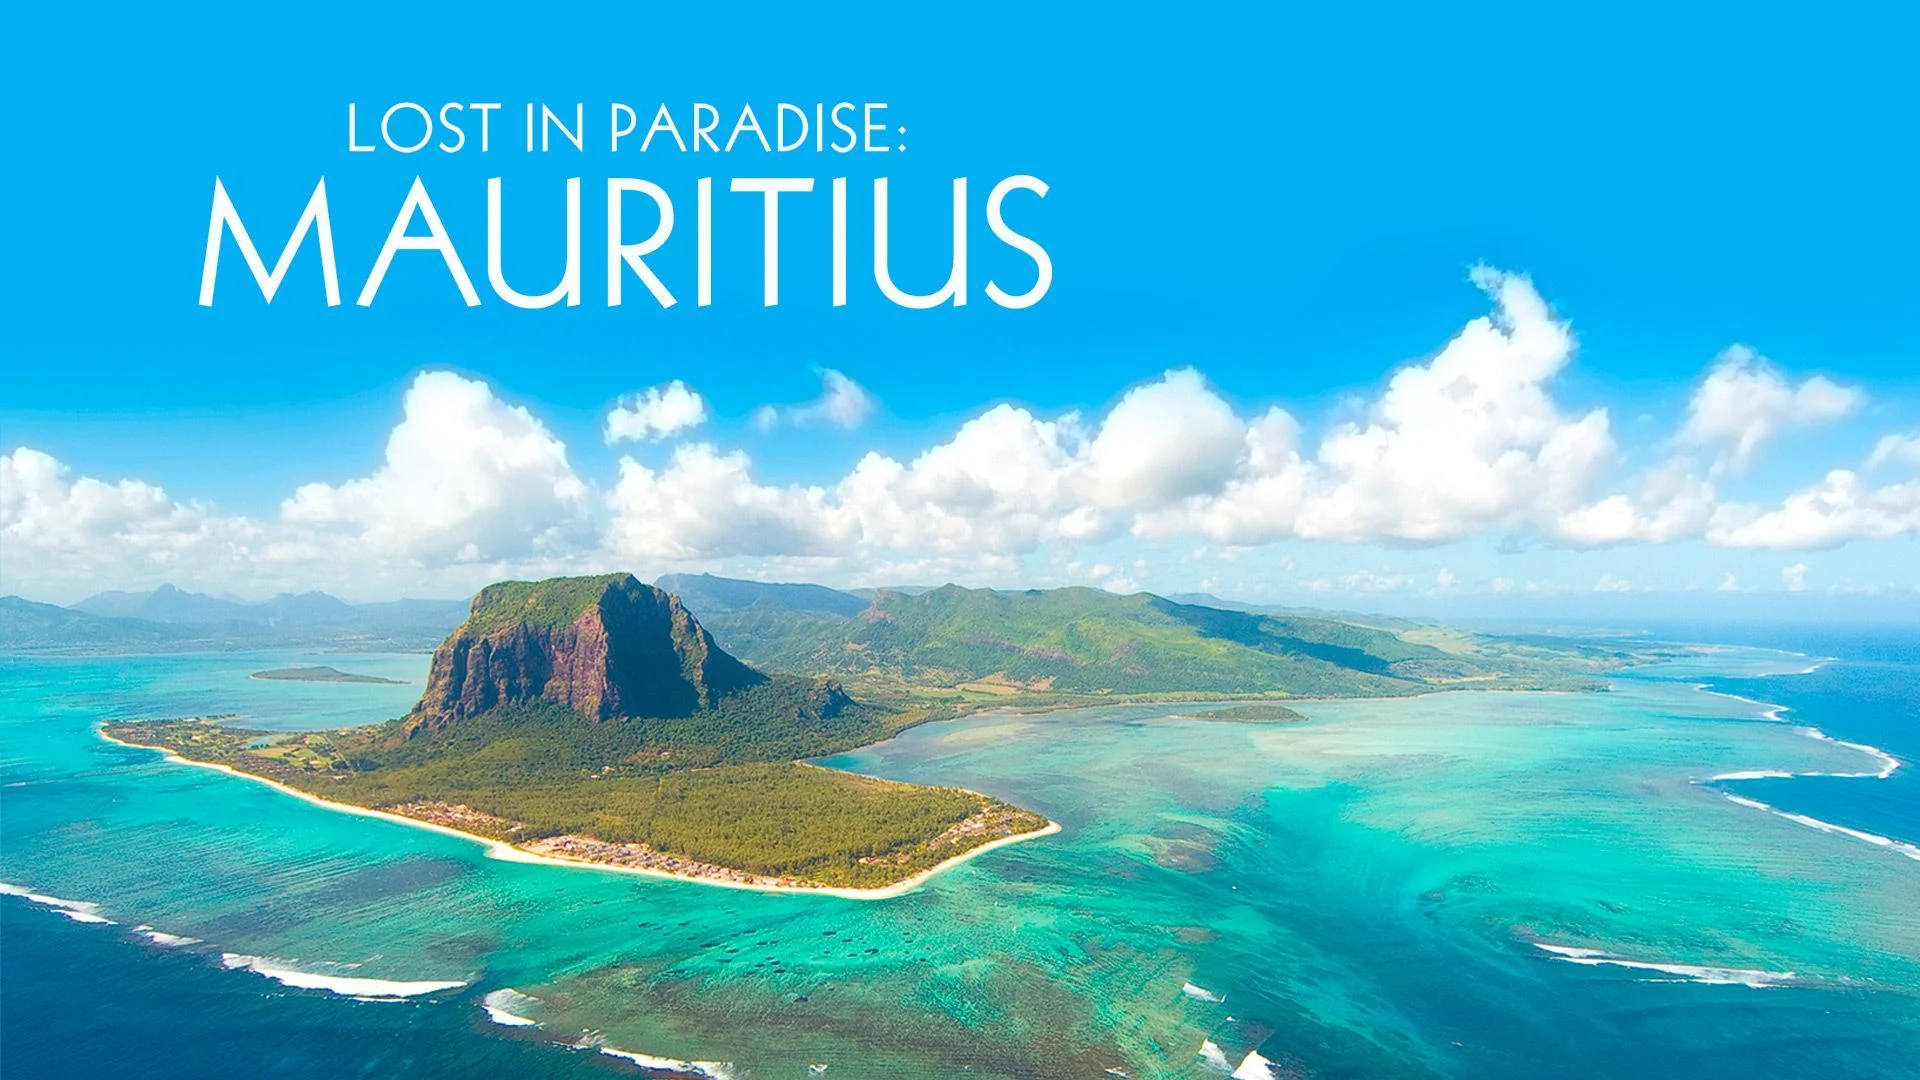 Mauritius Adası, Mauritius Balayı Otelleri, Turlarını ve Özel Bilgilerini Tropik Adalar’dan takip edin, çok özel bilgiler ve haberler Tropik Adalar Mauritius Adası Sayfamızda